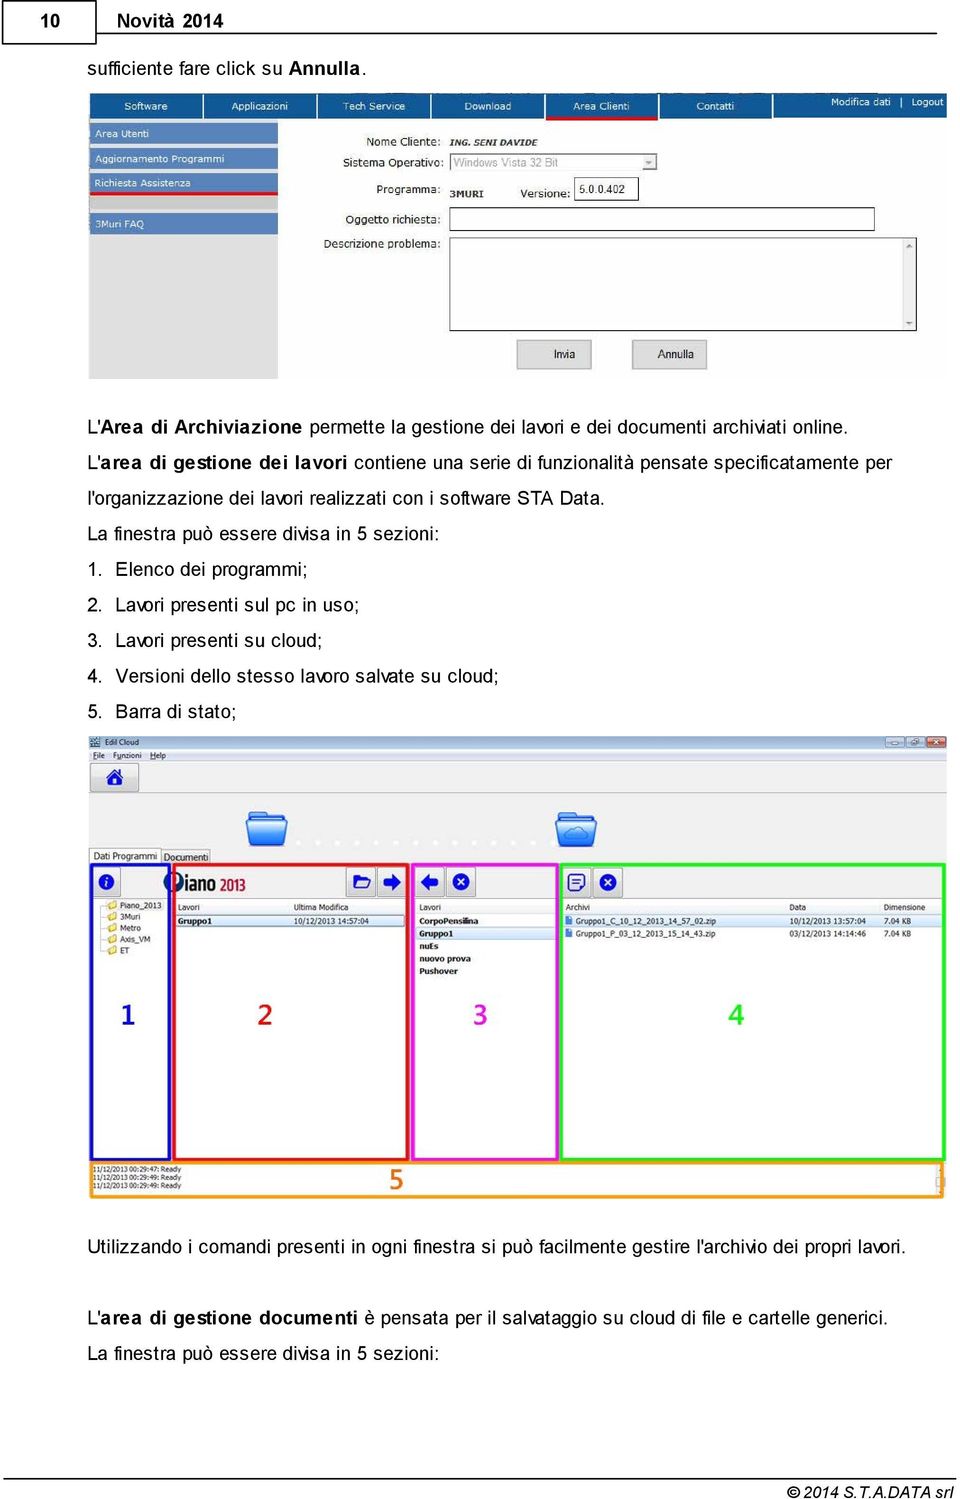 La finestra può essere divisa in 5 sezioni: 1. Elenco dei programmi; 2. Lavori presenti sul pc in uso; 3. Lavori presenti su cloud; 4. Versioni dello stesso lavoro salvate su cloud; 5.